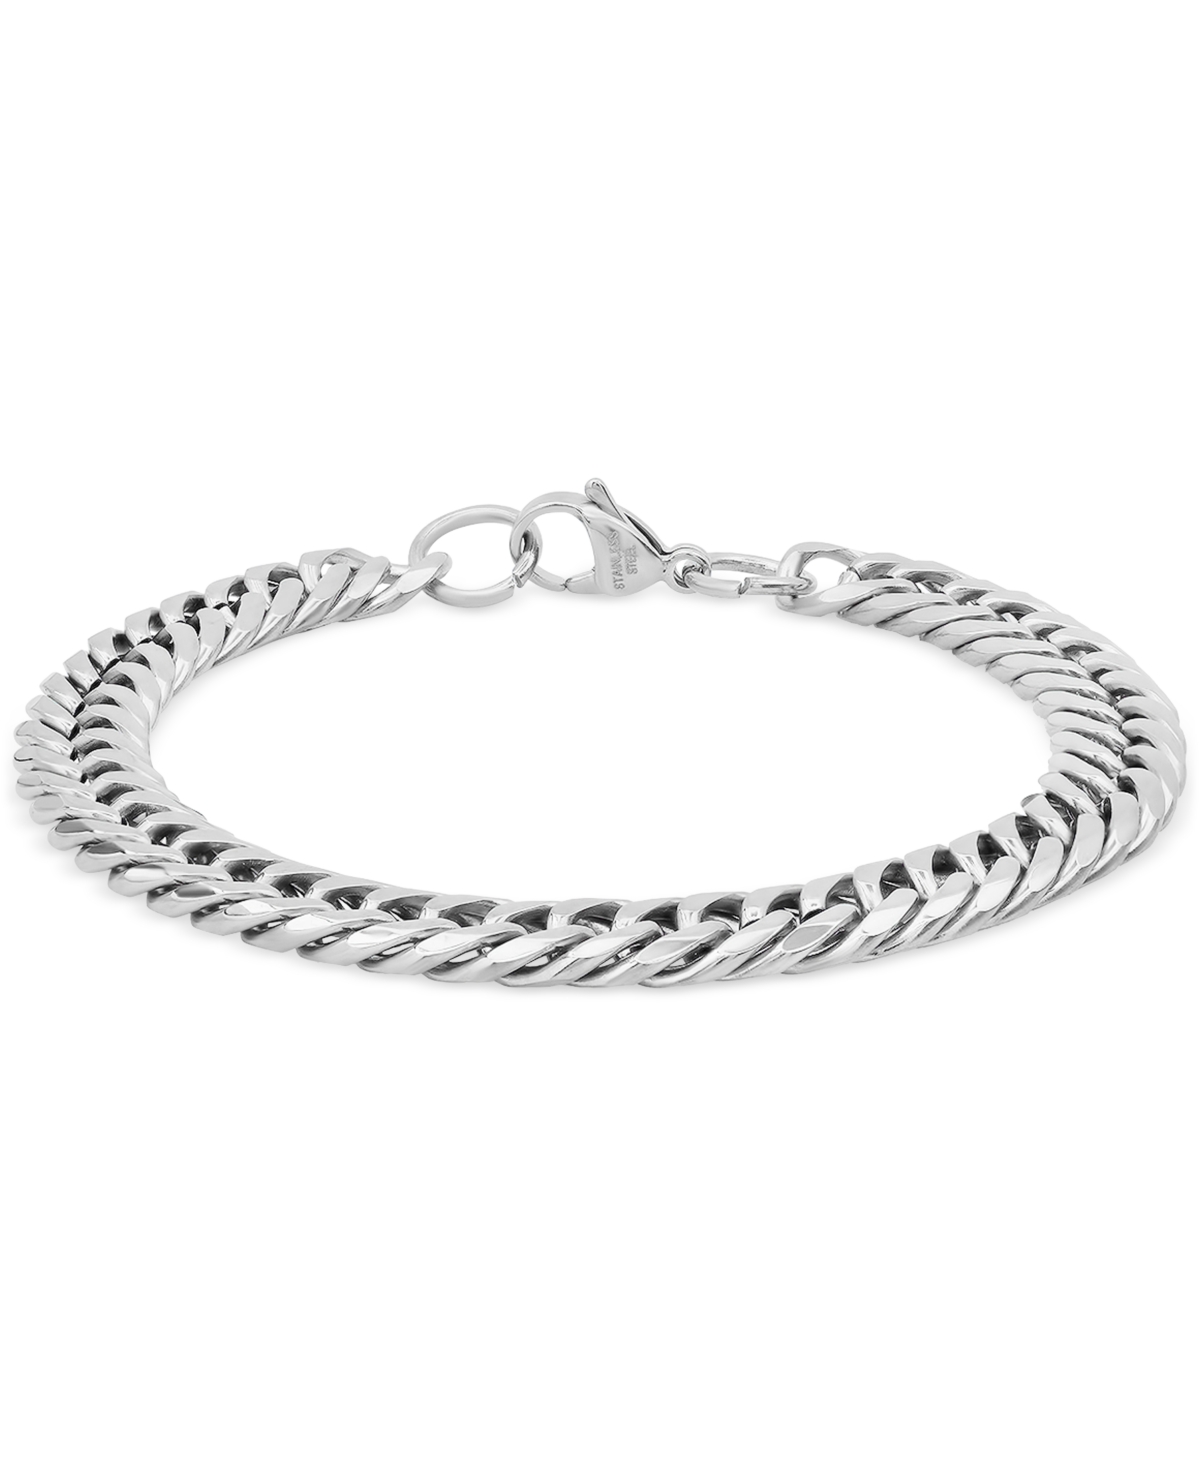 Steeltime Men's Stainless Steel Cuban Link Chain Bracelet In Silver